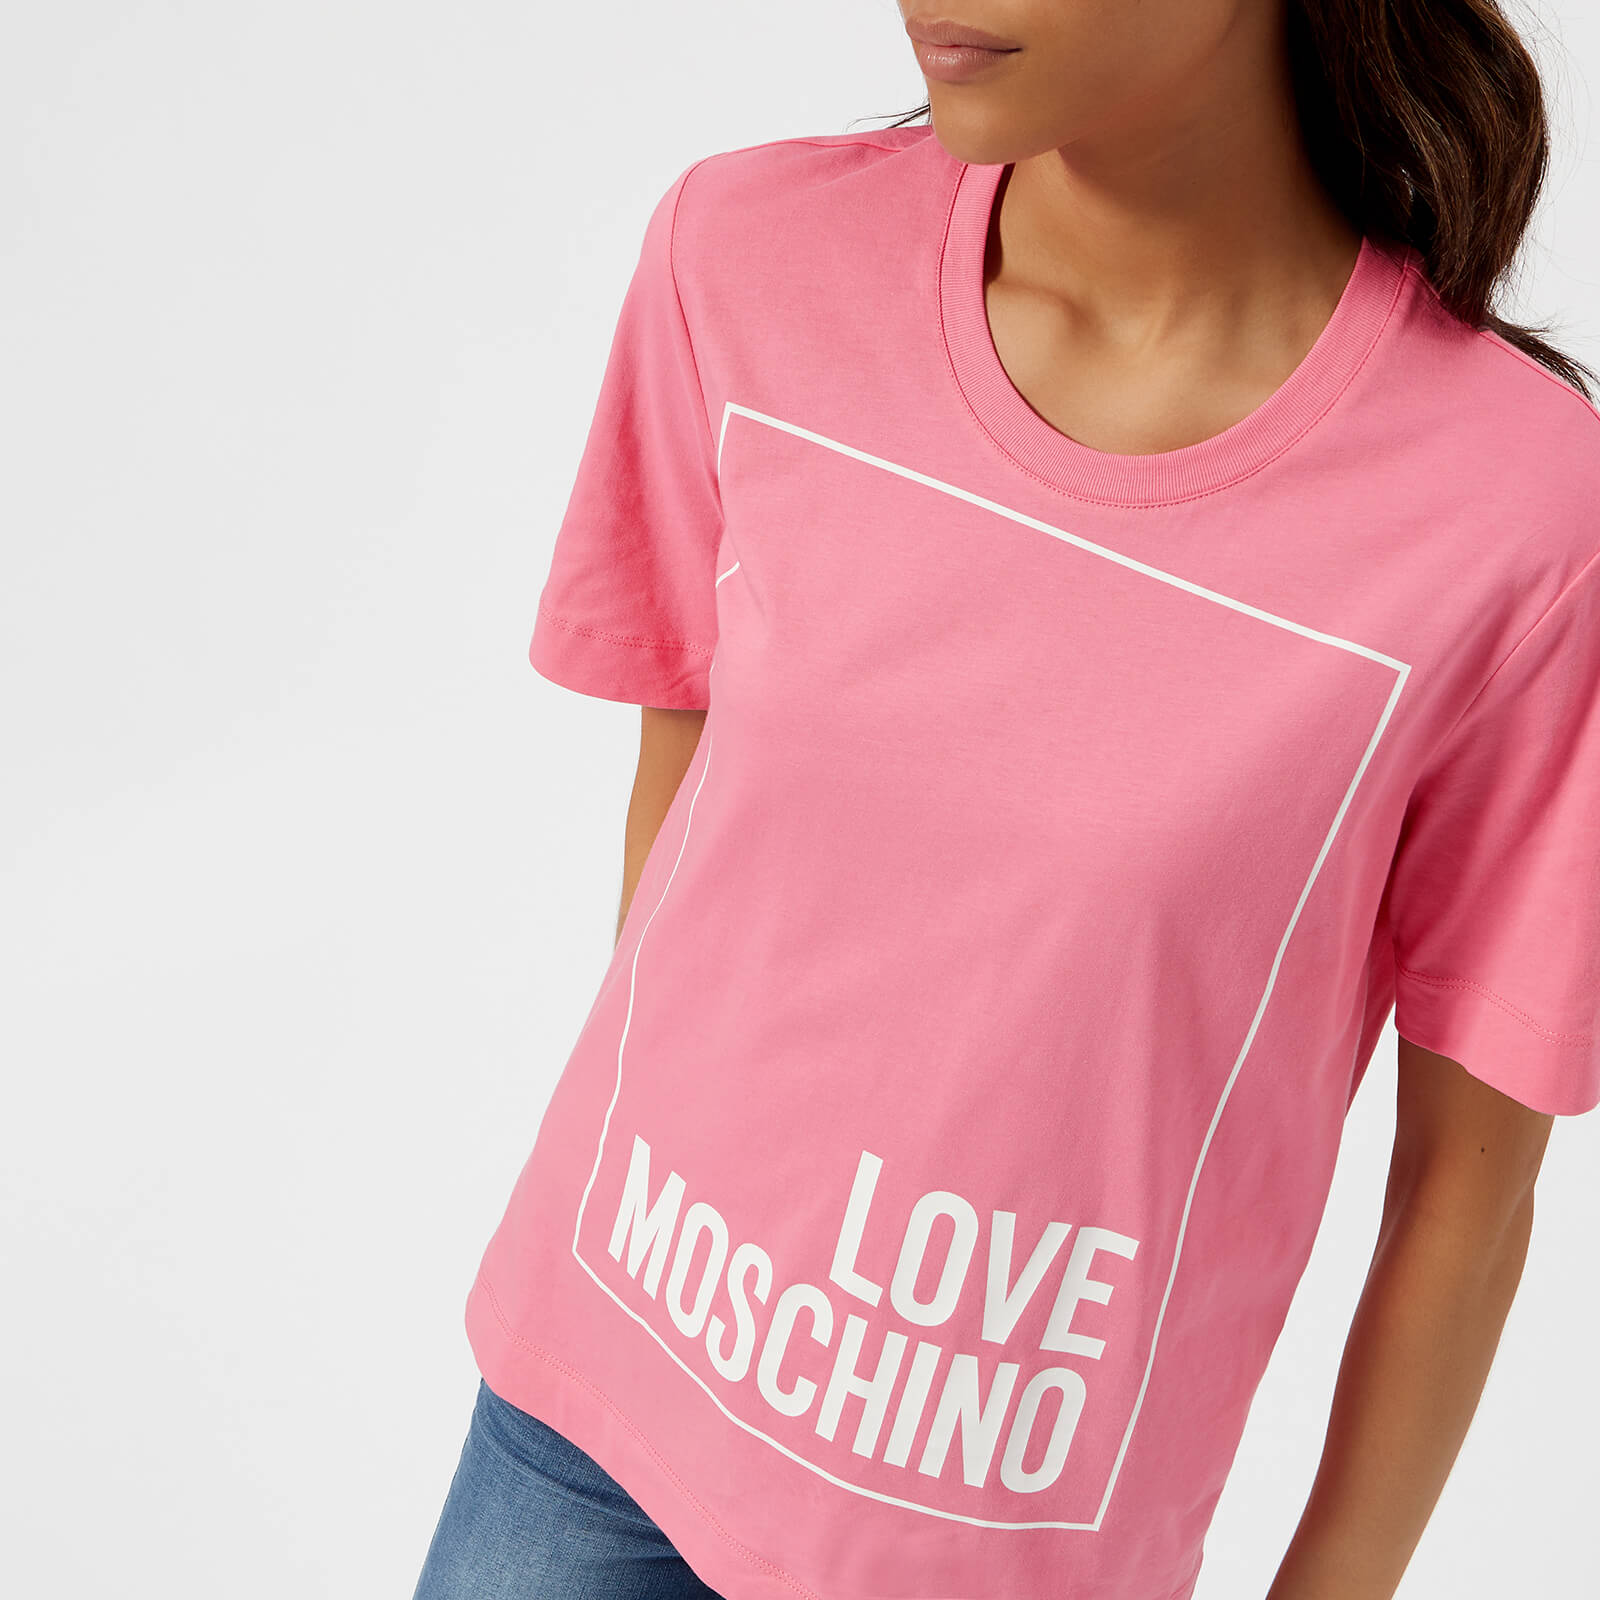 love moschino women's clothing